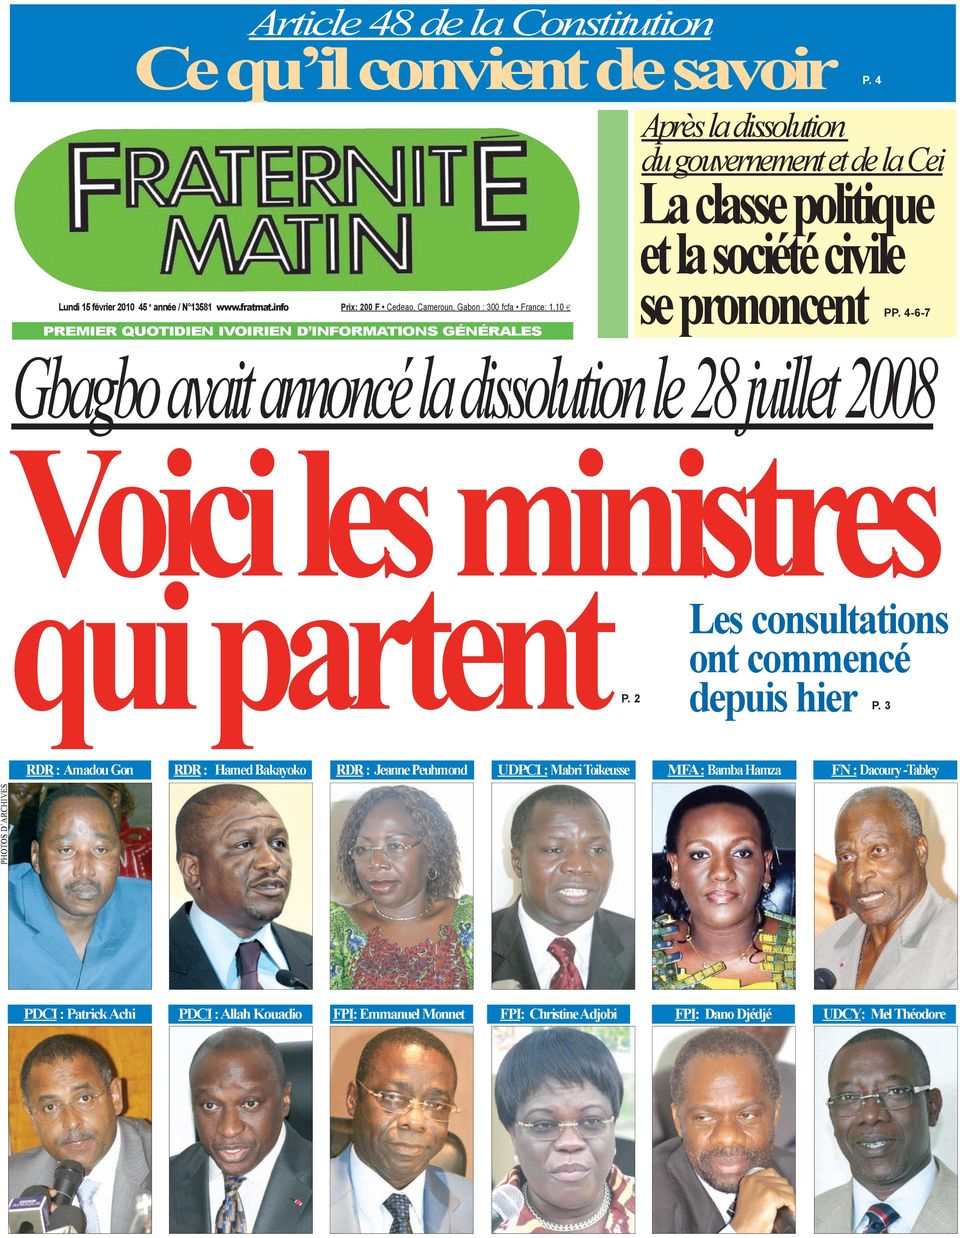 info Prix: 200 F Cedeao, Cameroun, Gabon : 300 fcfa France: 1,10 PREMIER QUOTIDIEN IvOIRIEN D INfORMaTIONs générales se prononcent PP.